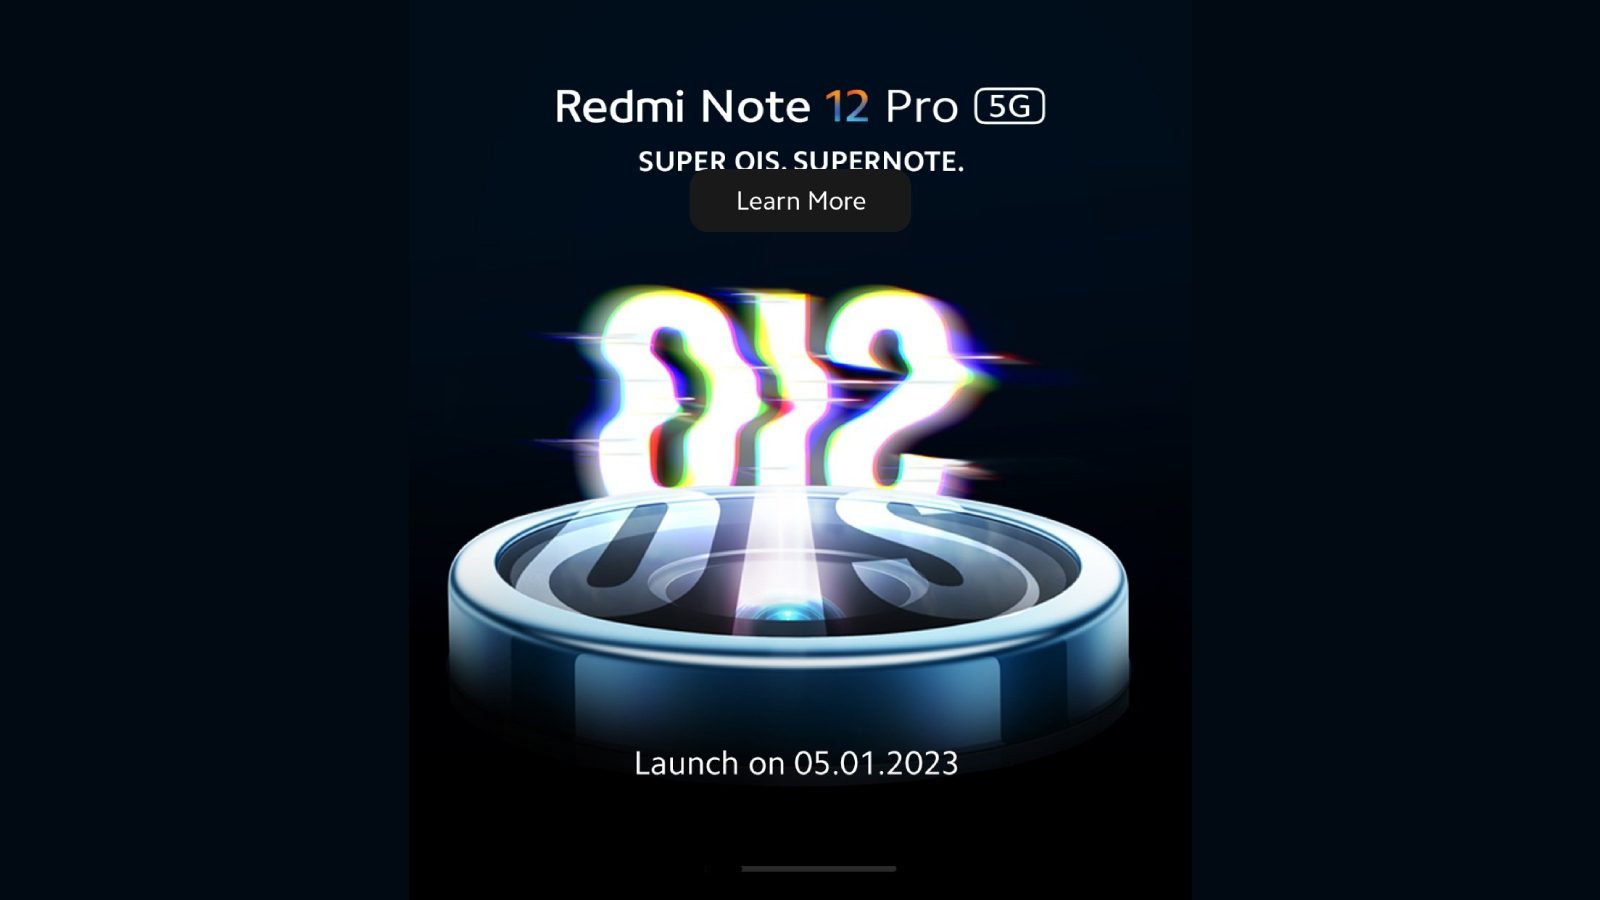 Редми Note 12 Pro 5G подтверждены к запуску в Индии с OIS 5 января